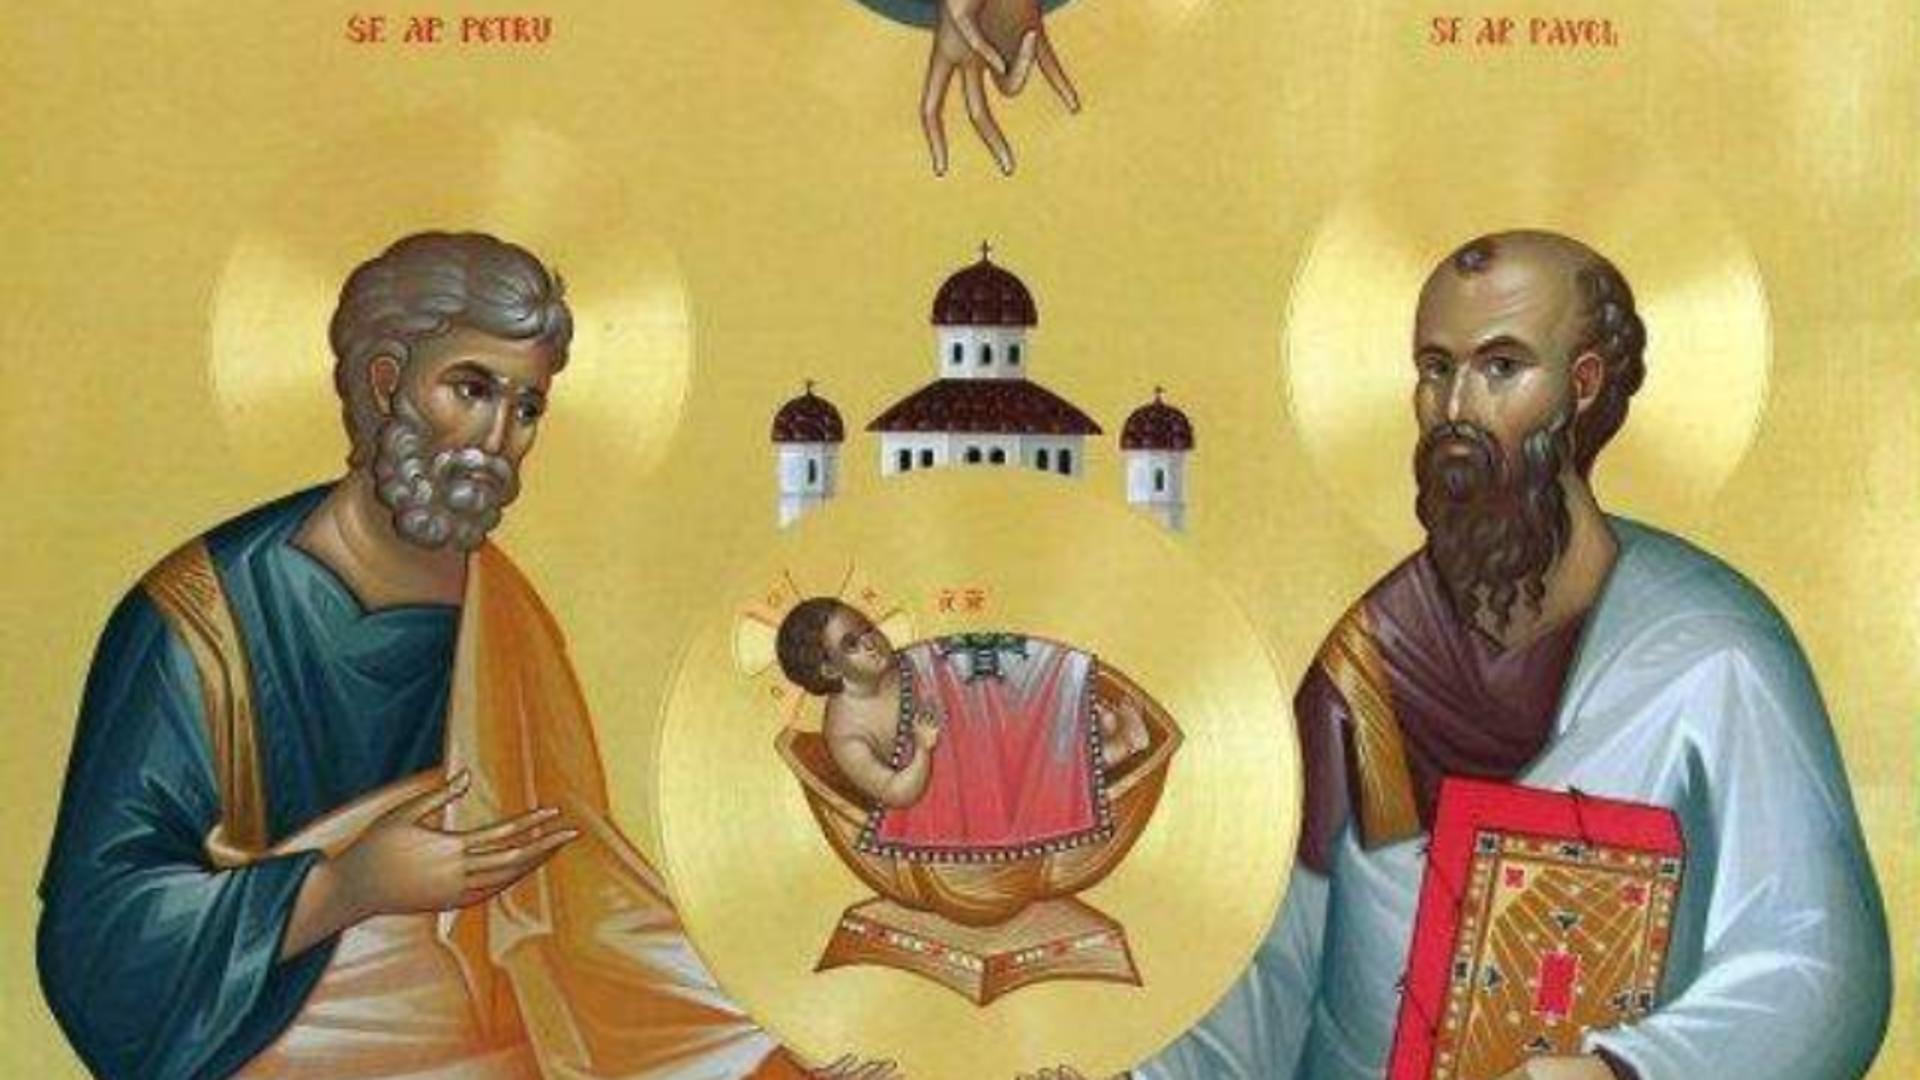 Postul sfinților Petru și Pavel